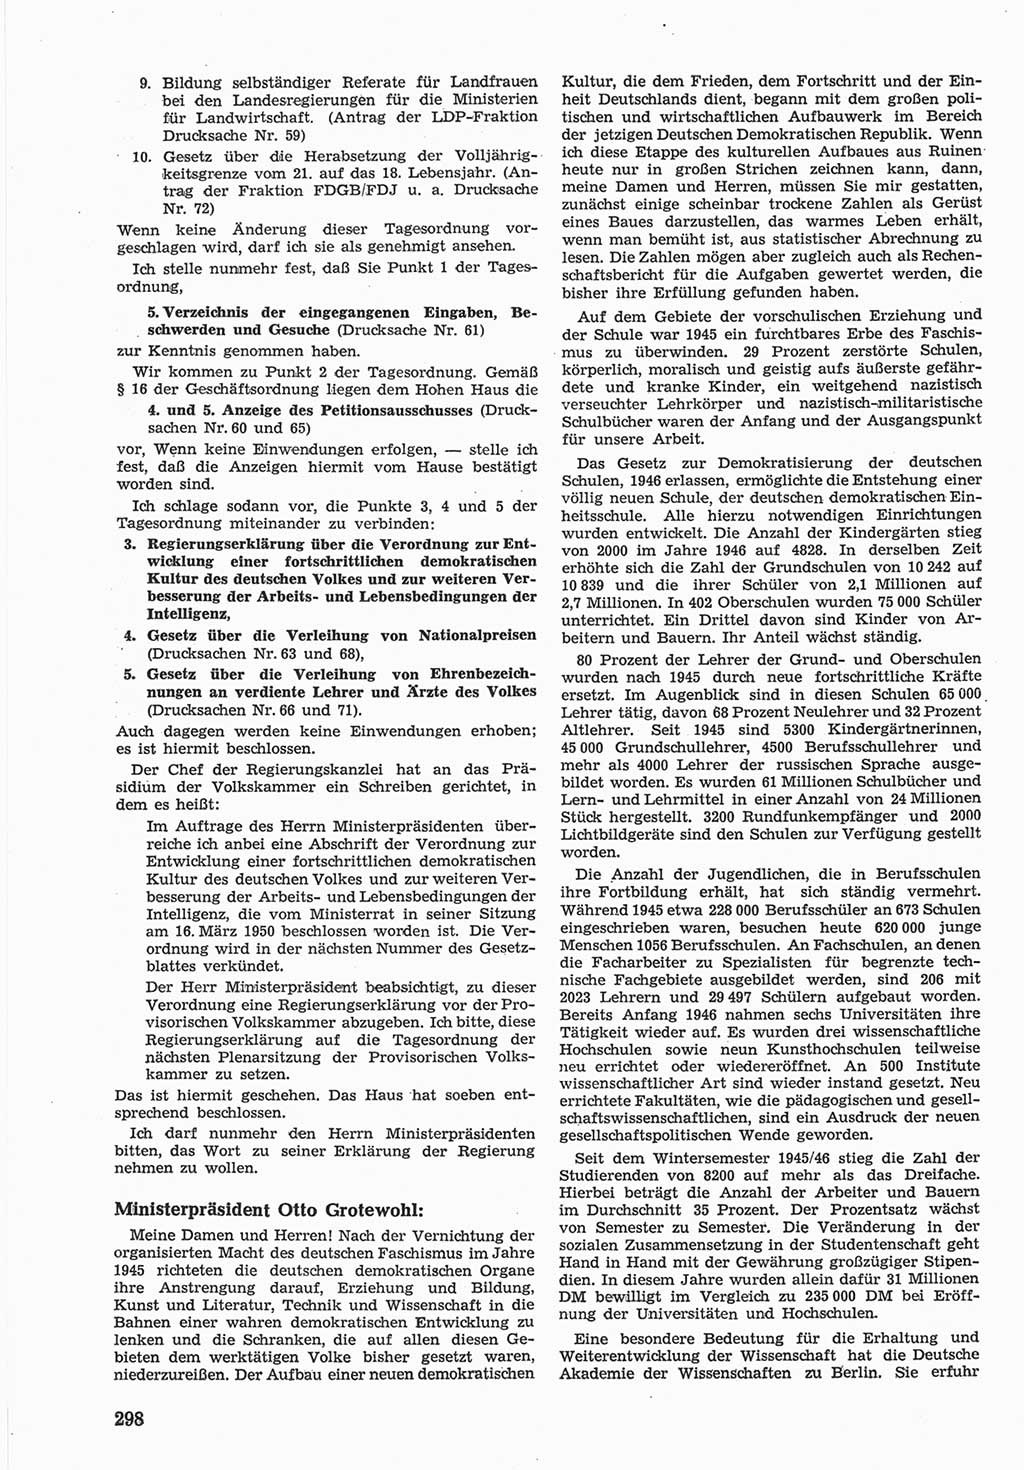 Provisorische Volkskammer (VK) der Deutschen Demokratischen Republik (DDR) 1949-1950, Dokument 312 (Prov. VK DDR 1949-1950, Dok. 312)